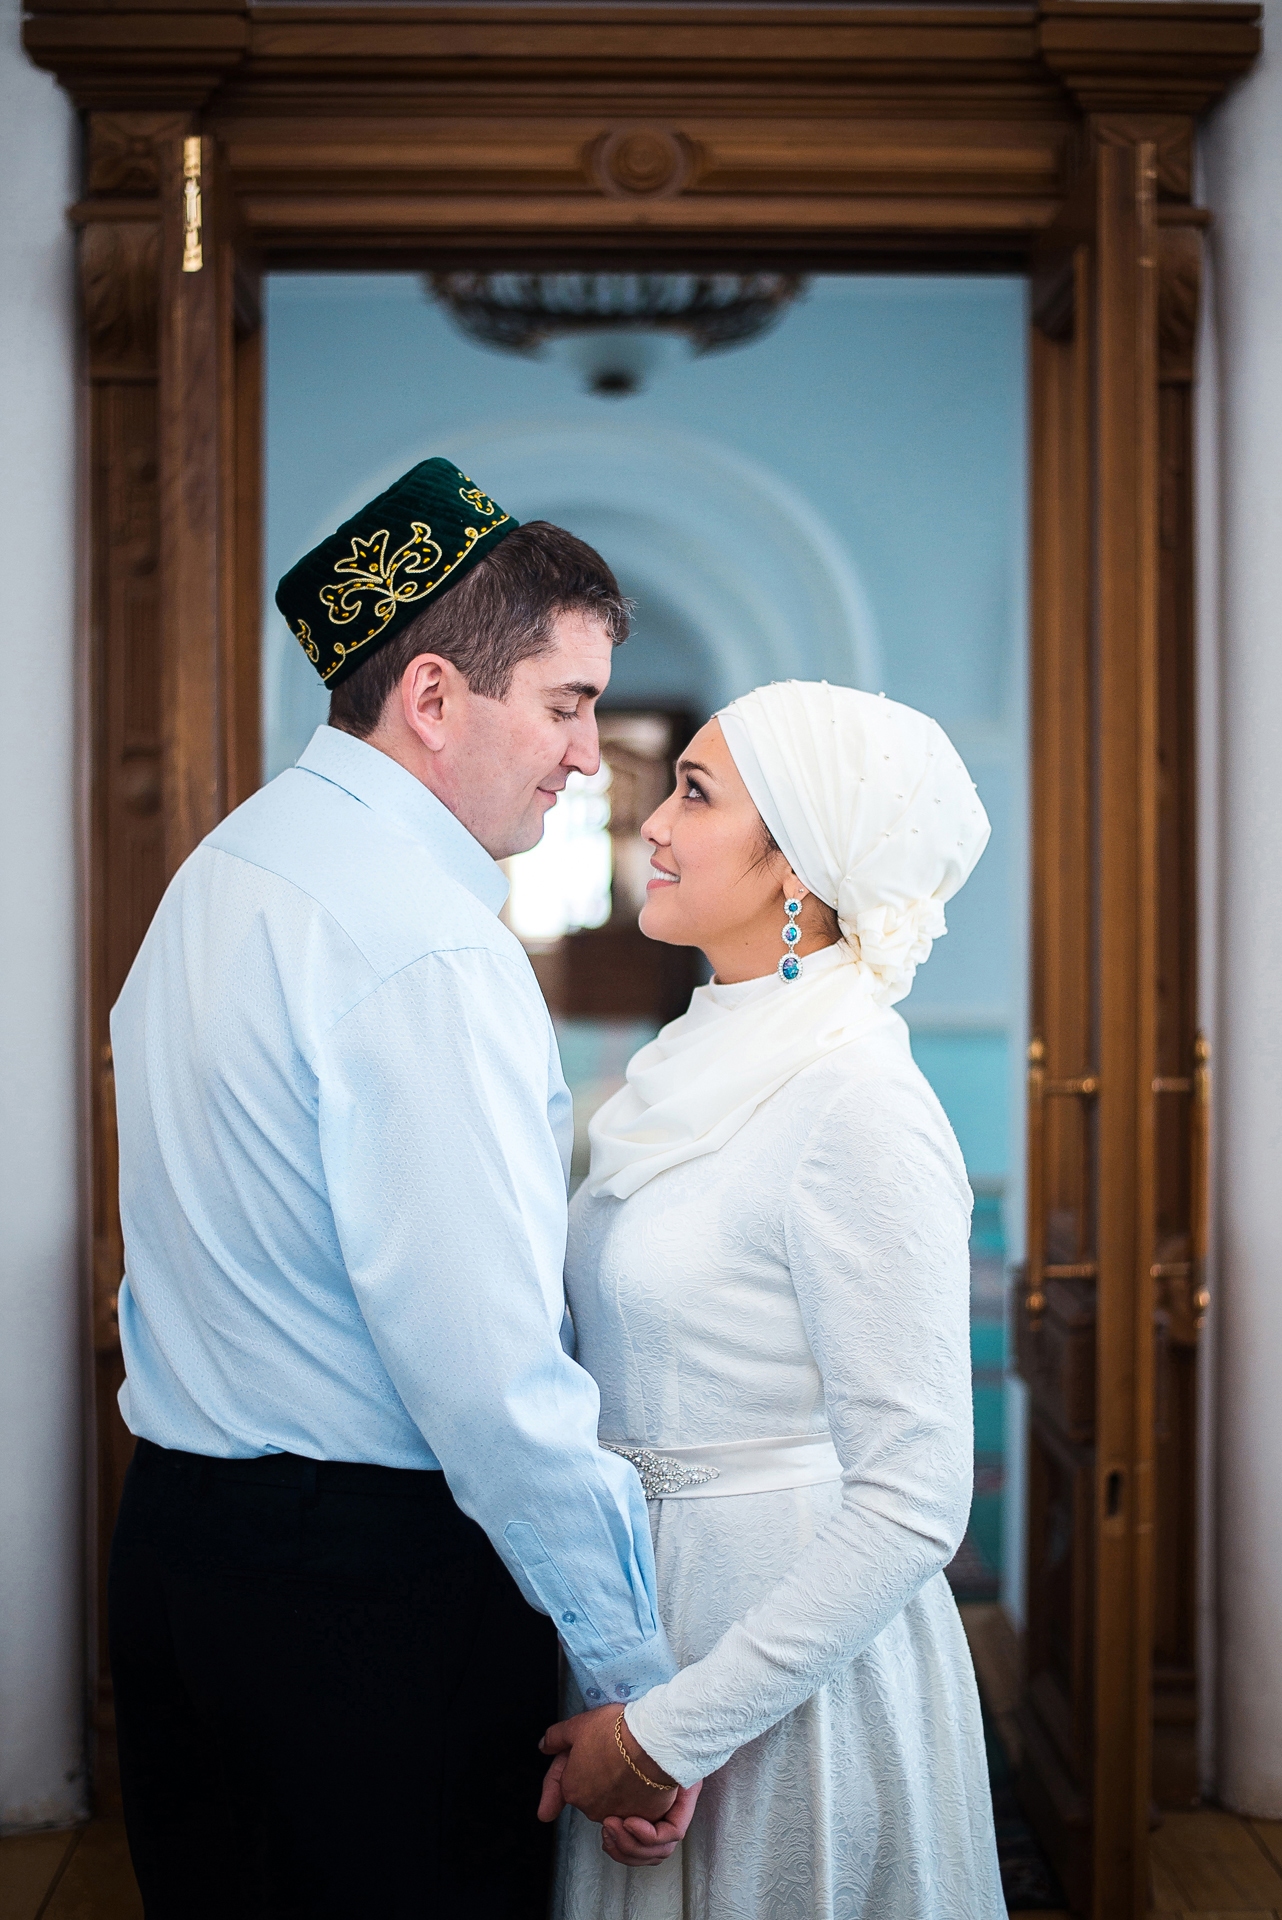 Мусульманская свадьба в мечети